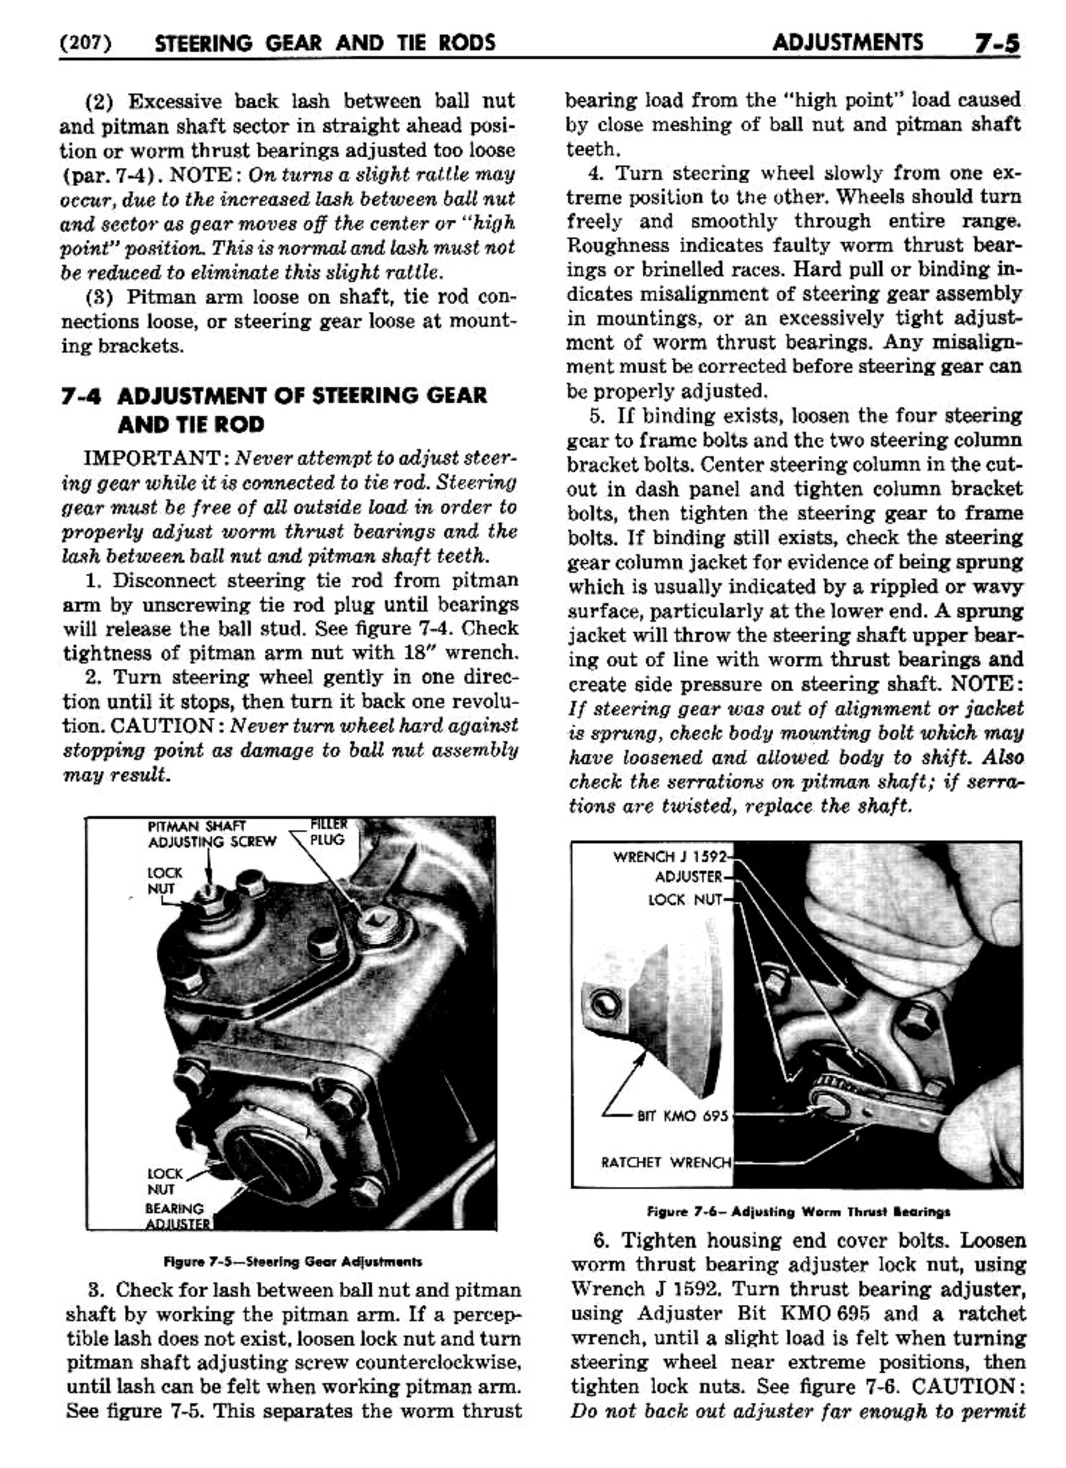 n_08 1950 Buick Shop Manual - Steering-005-005.jpg